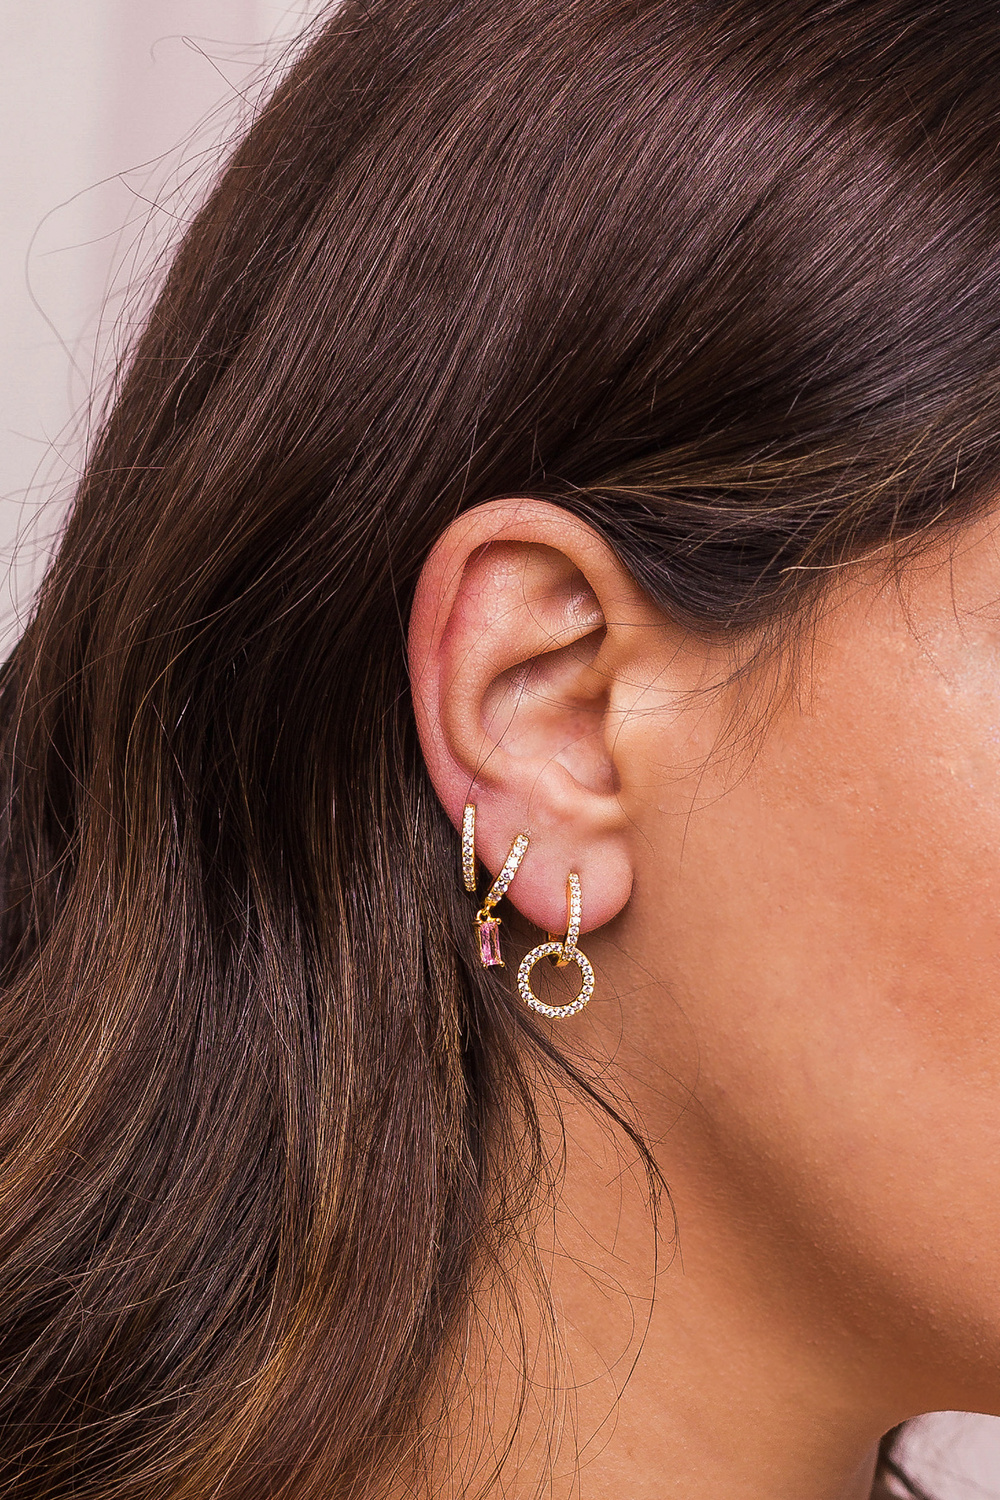 Woman Ear with Mulriple Piercings Wearing Beautiful Earrings Wit